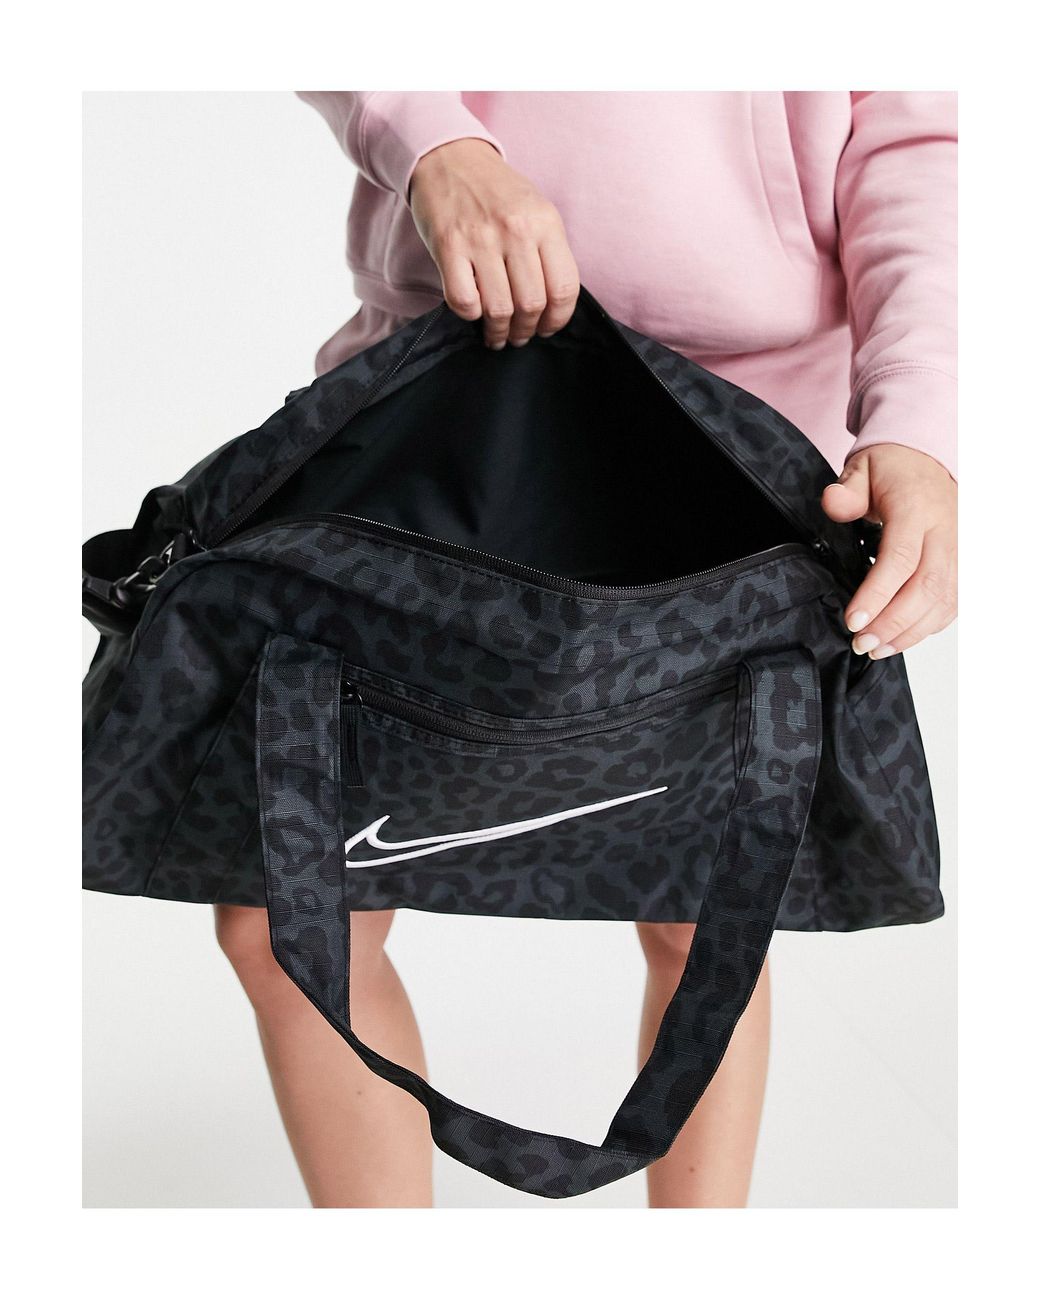 Nike Gym Club Holdall Leopard Print Bag in Black | Lyst Australia